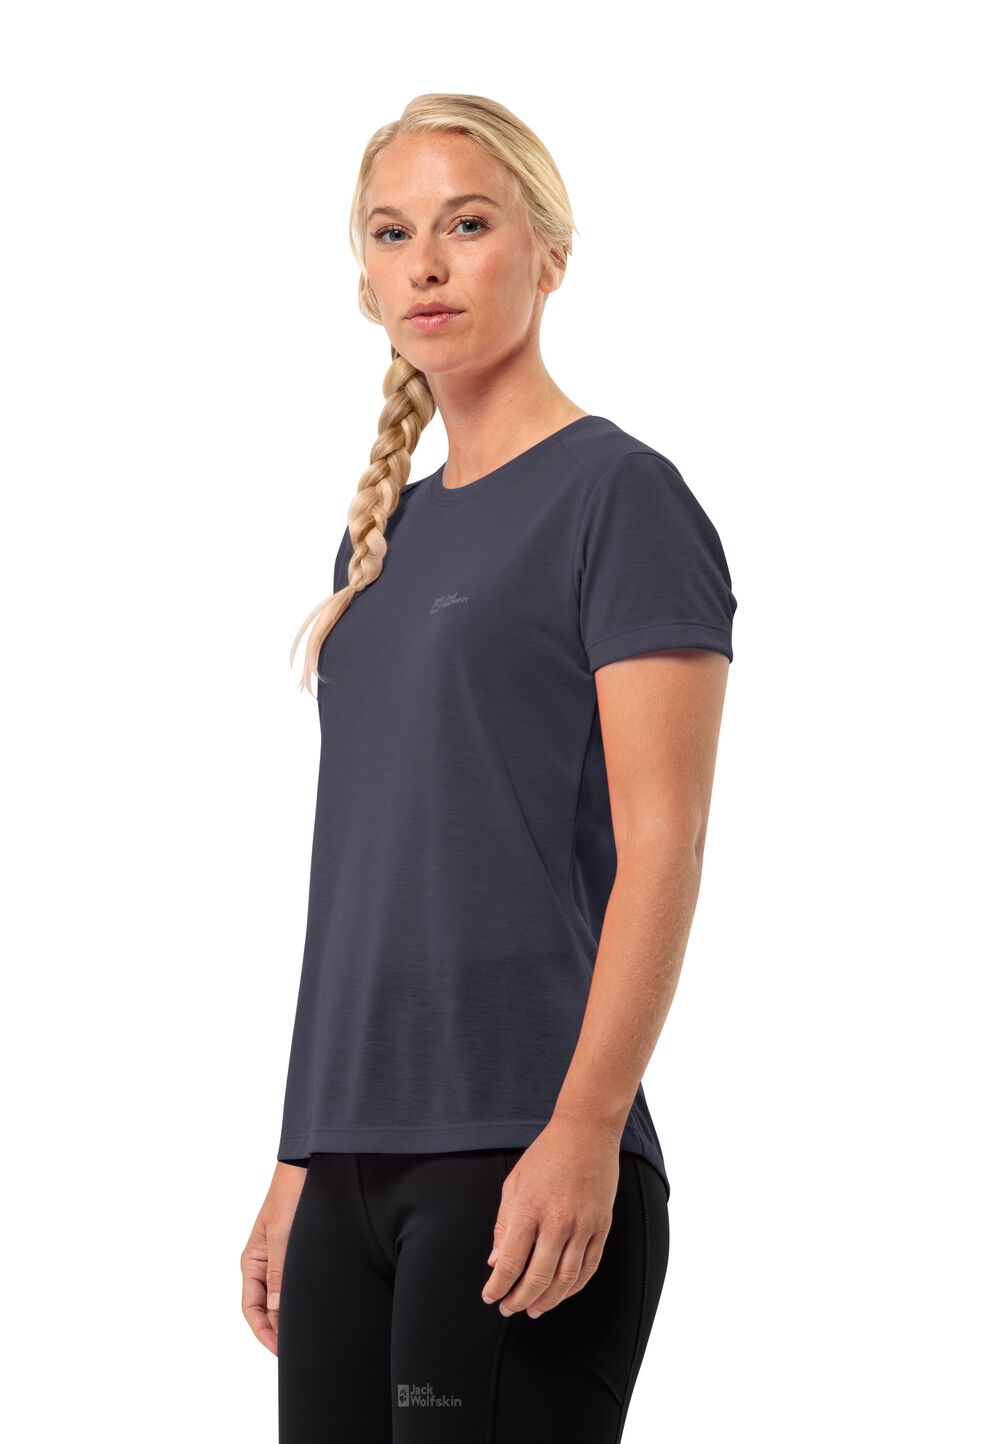 Jack Wolfskin Vonnan S S T-Shirt Women Functioneel shirt Dames S graphite